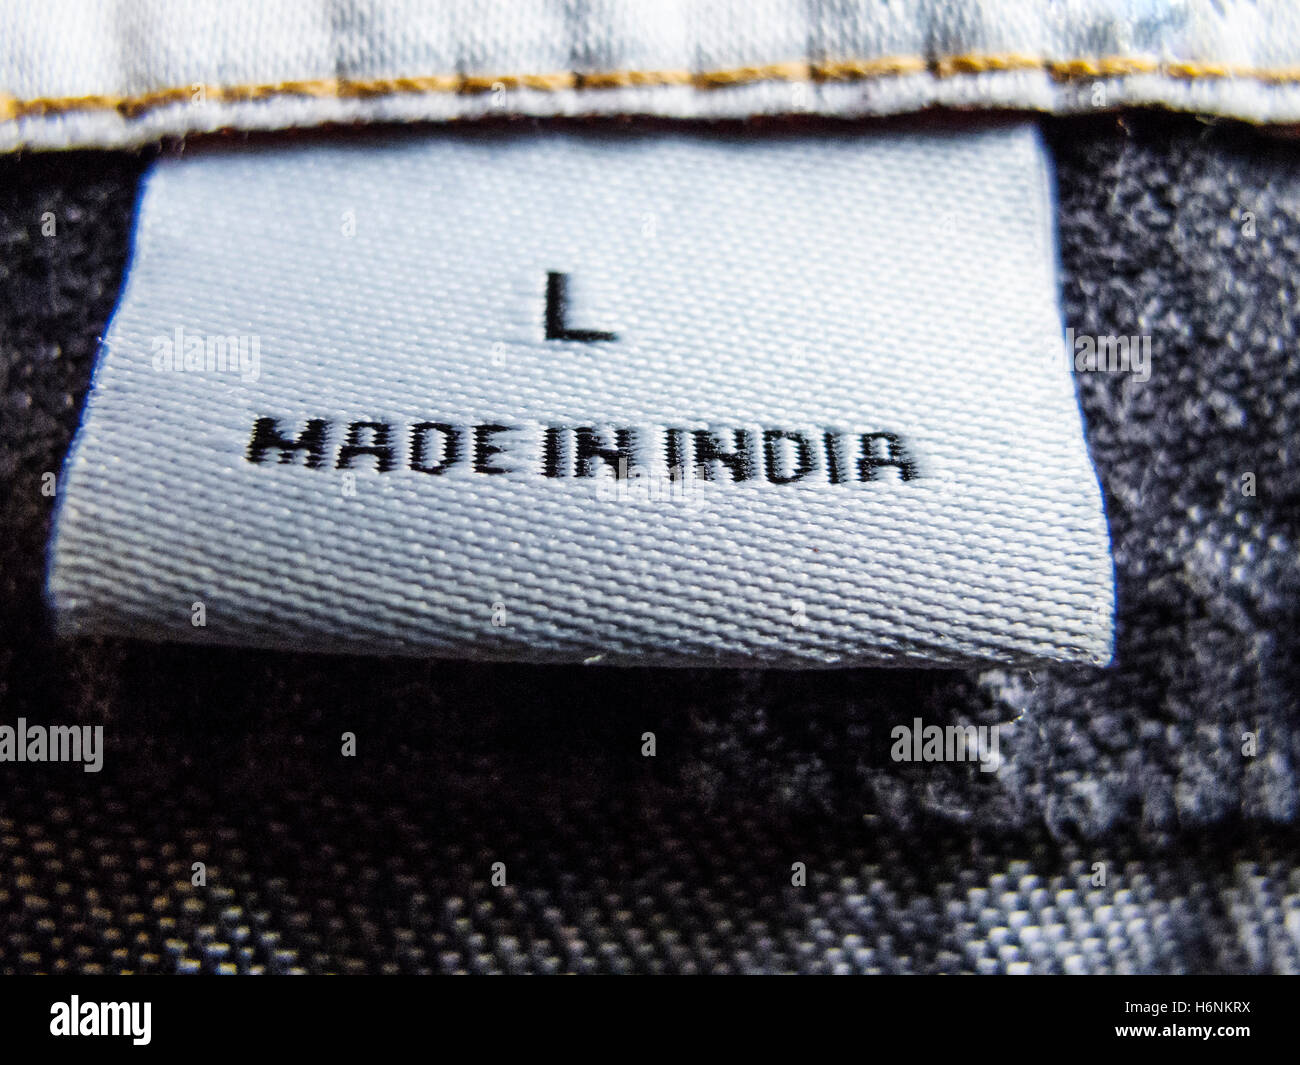 Dettaglio di abbigliamento etichetta che mostra indumento è stato realizzato in India Foto Stock